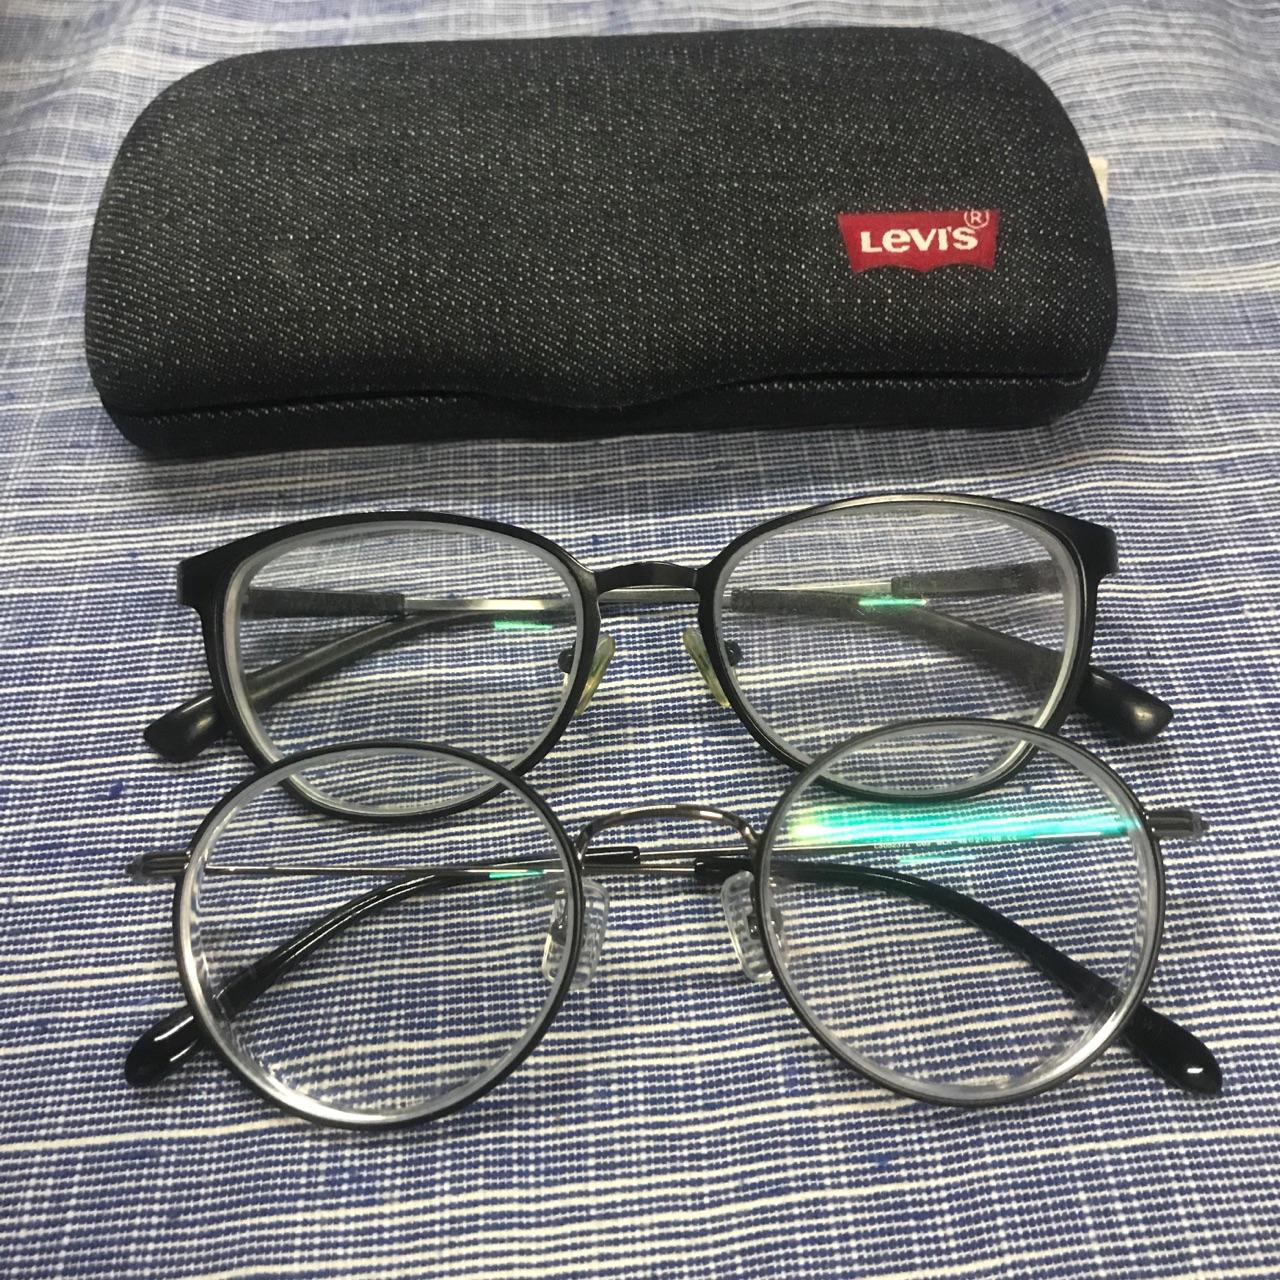 北京哪里配眼镜比较好?